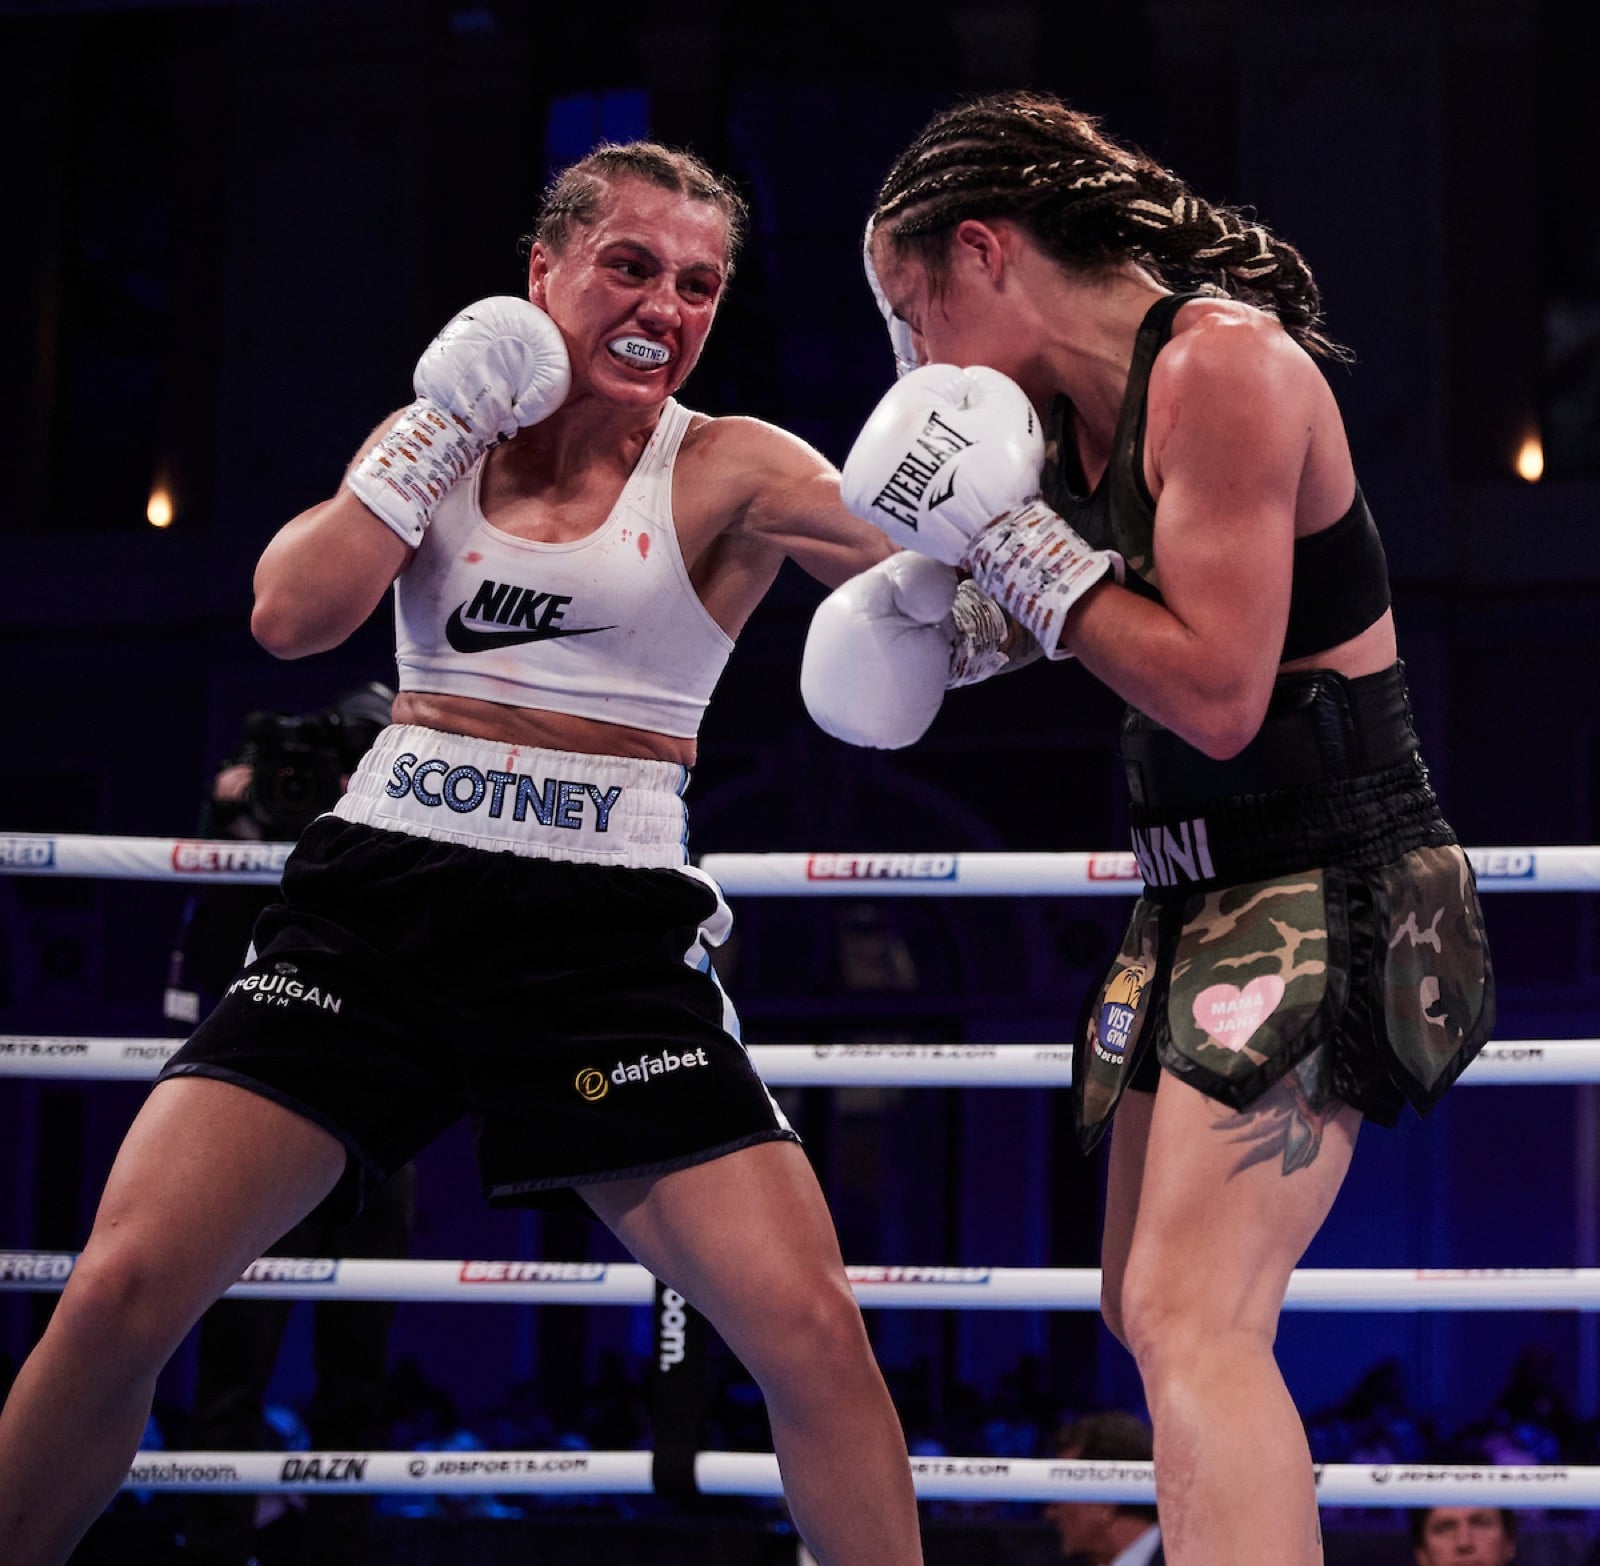 Ellie Scotney boxing image / photo